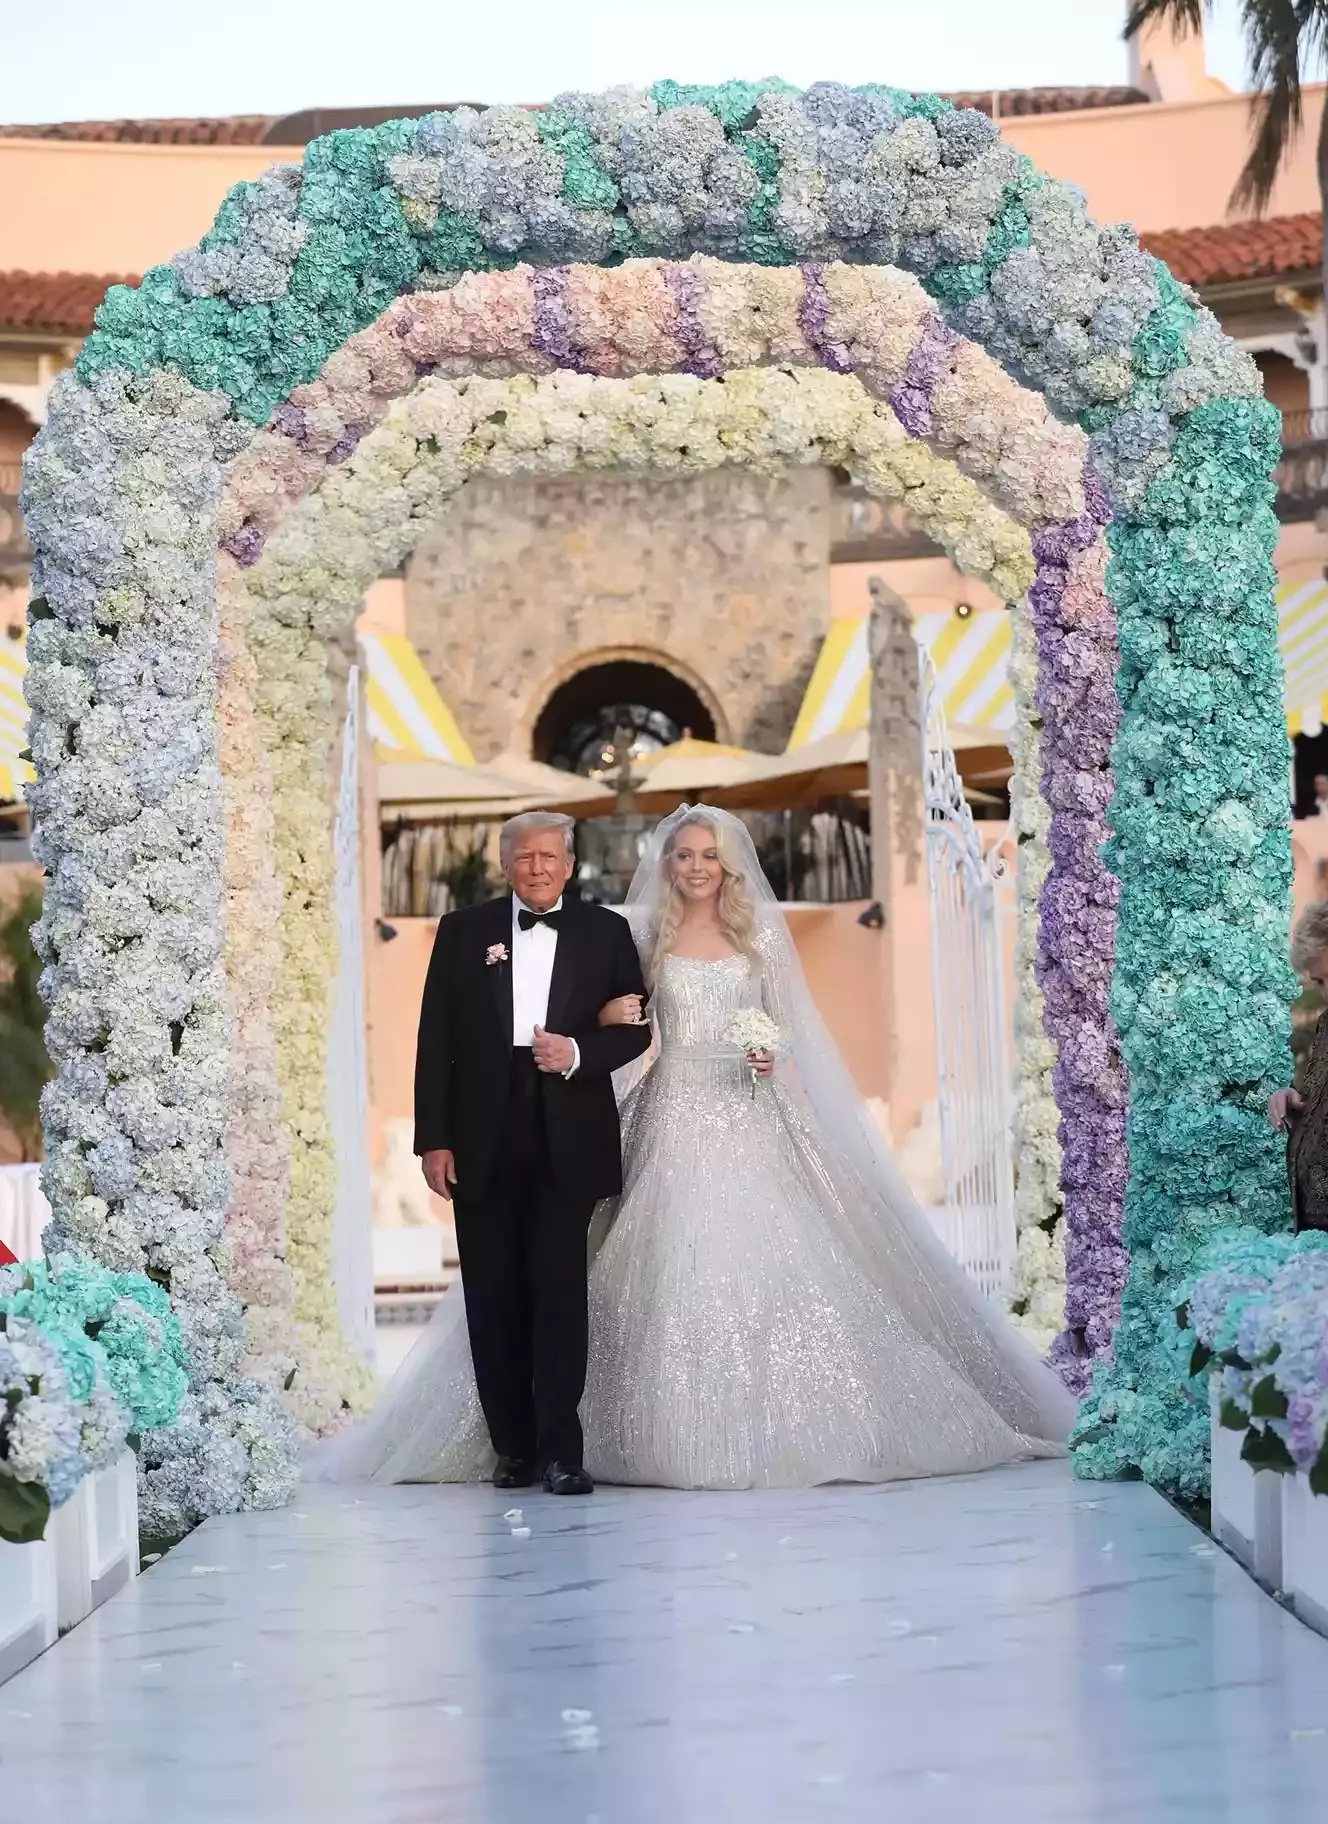 تيفاني ترامب في فستان فخم من ايلي صعب خلال حفل زفافها من مايكل بولس